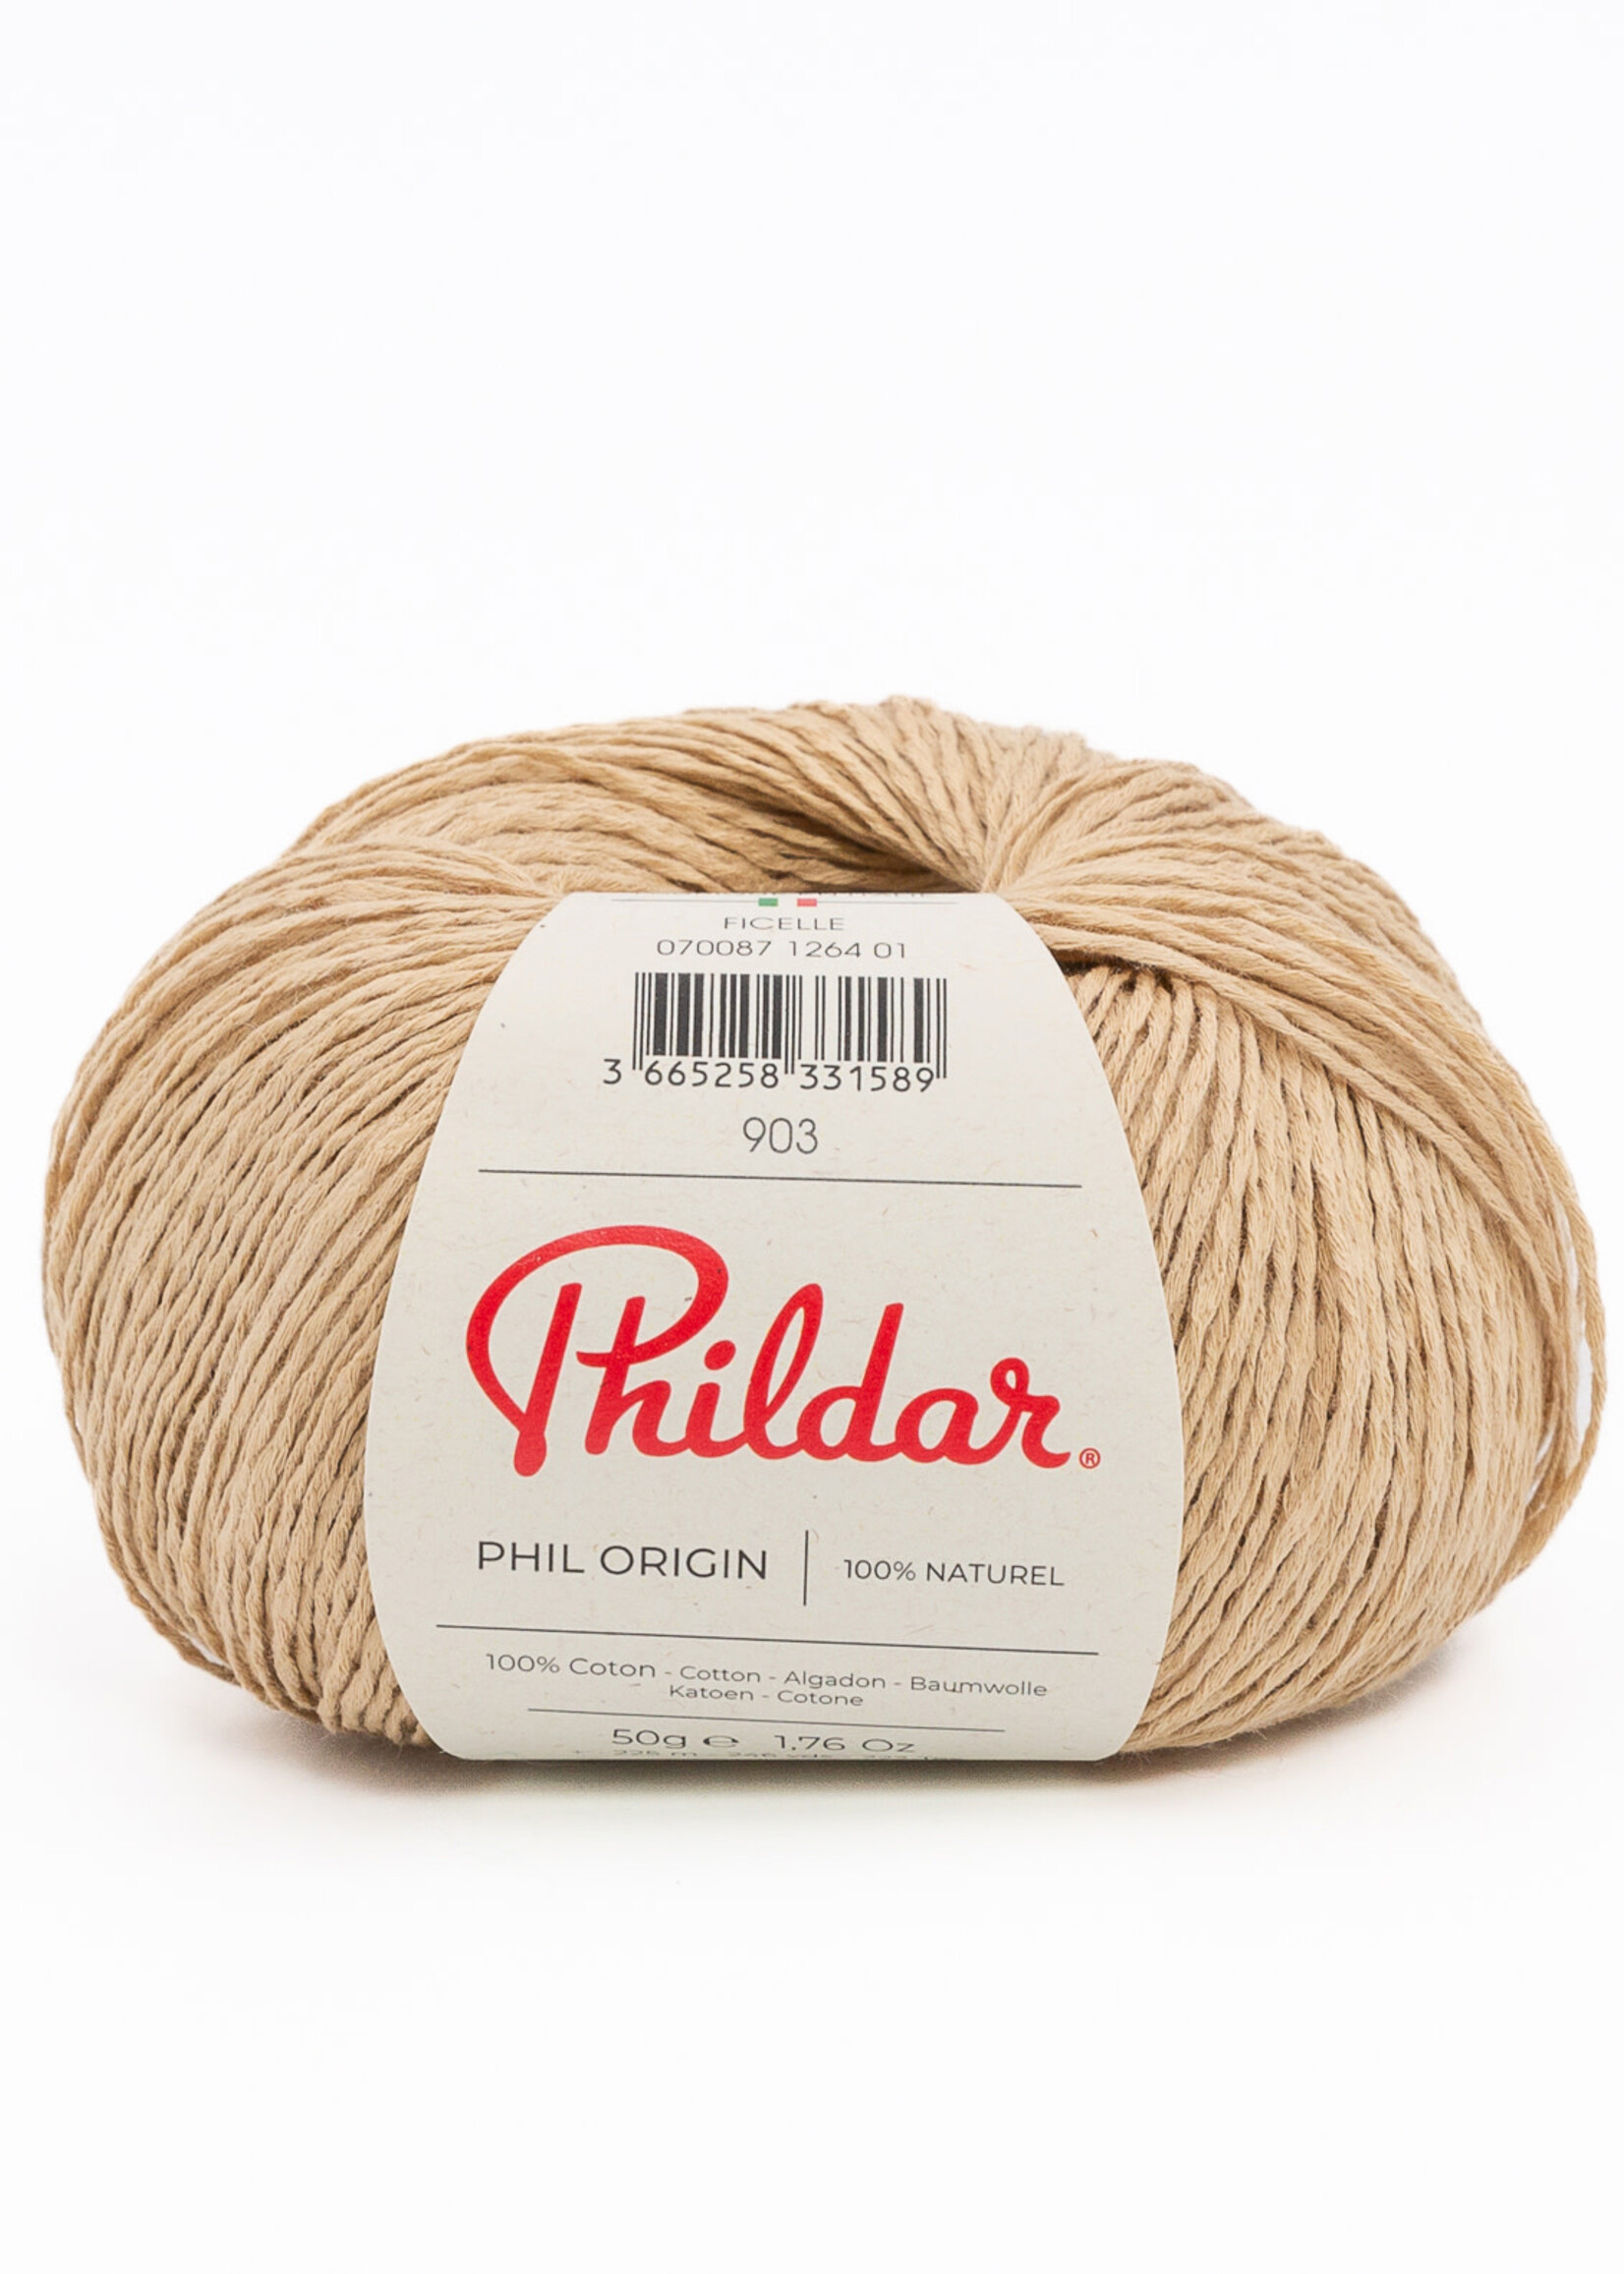 Phildar Phil Origin - Phildar -1264 ficelle